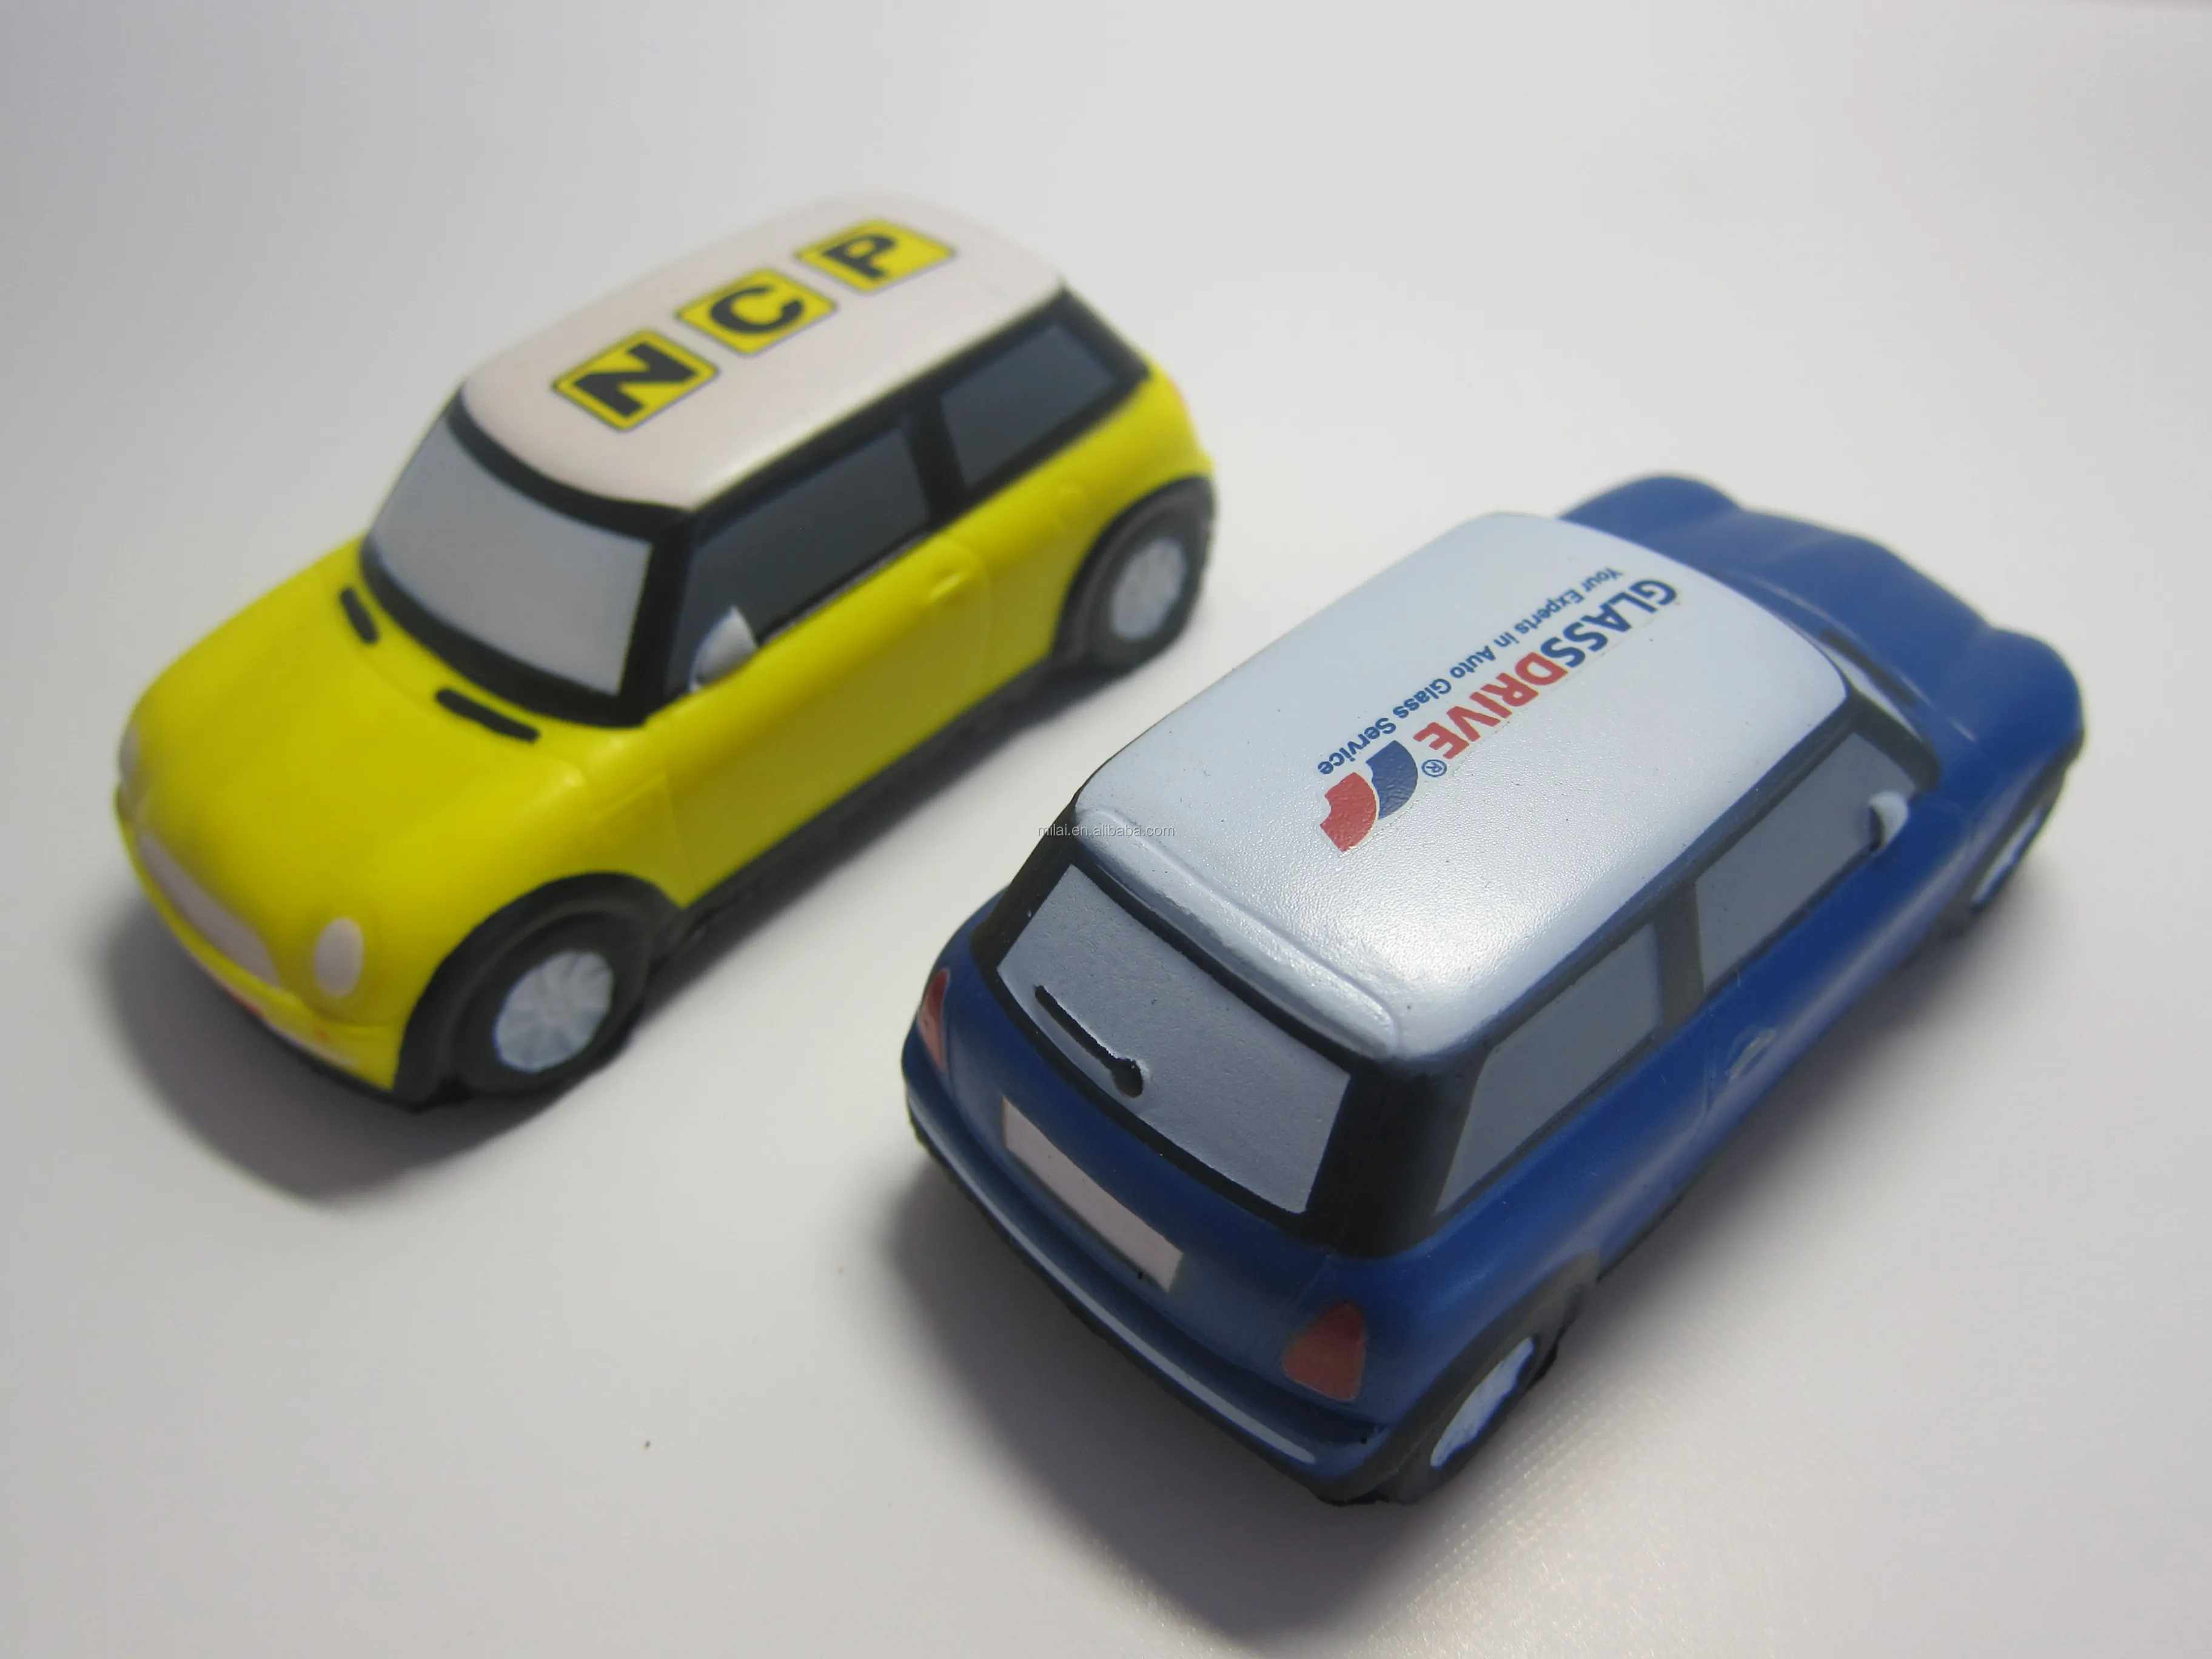 
pu mini cooper car toy /pu foam vehicle ball /pu promotional mini car crafts 